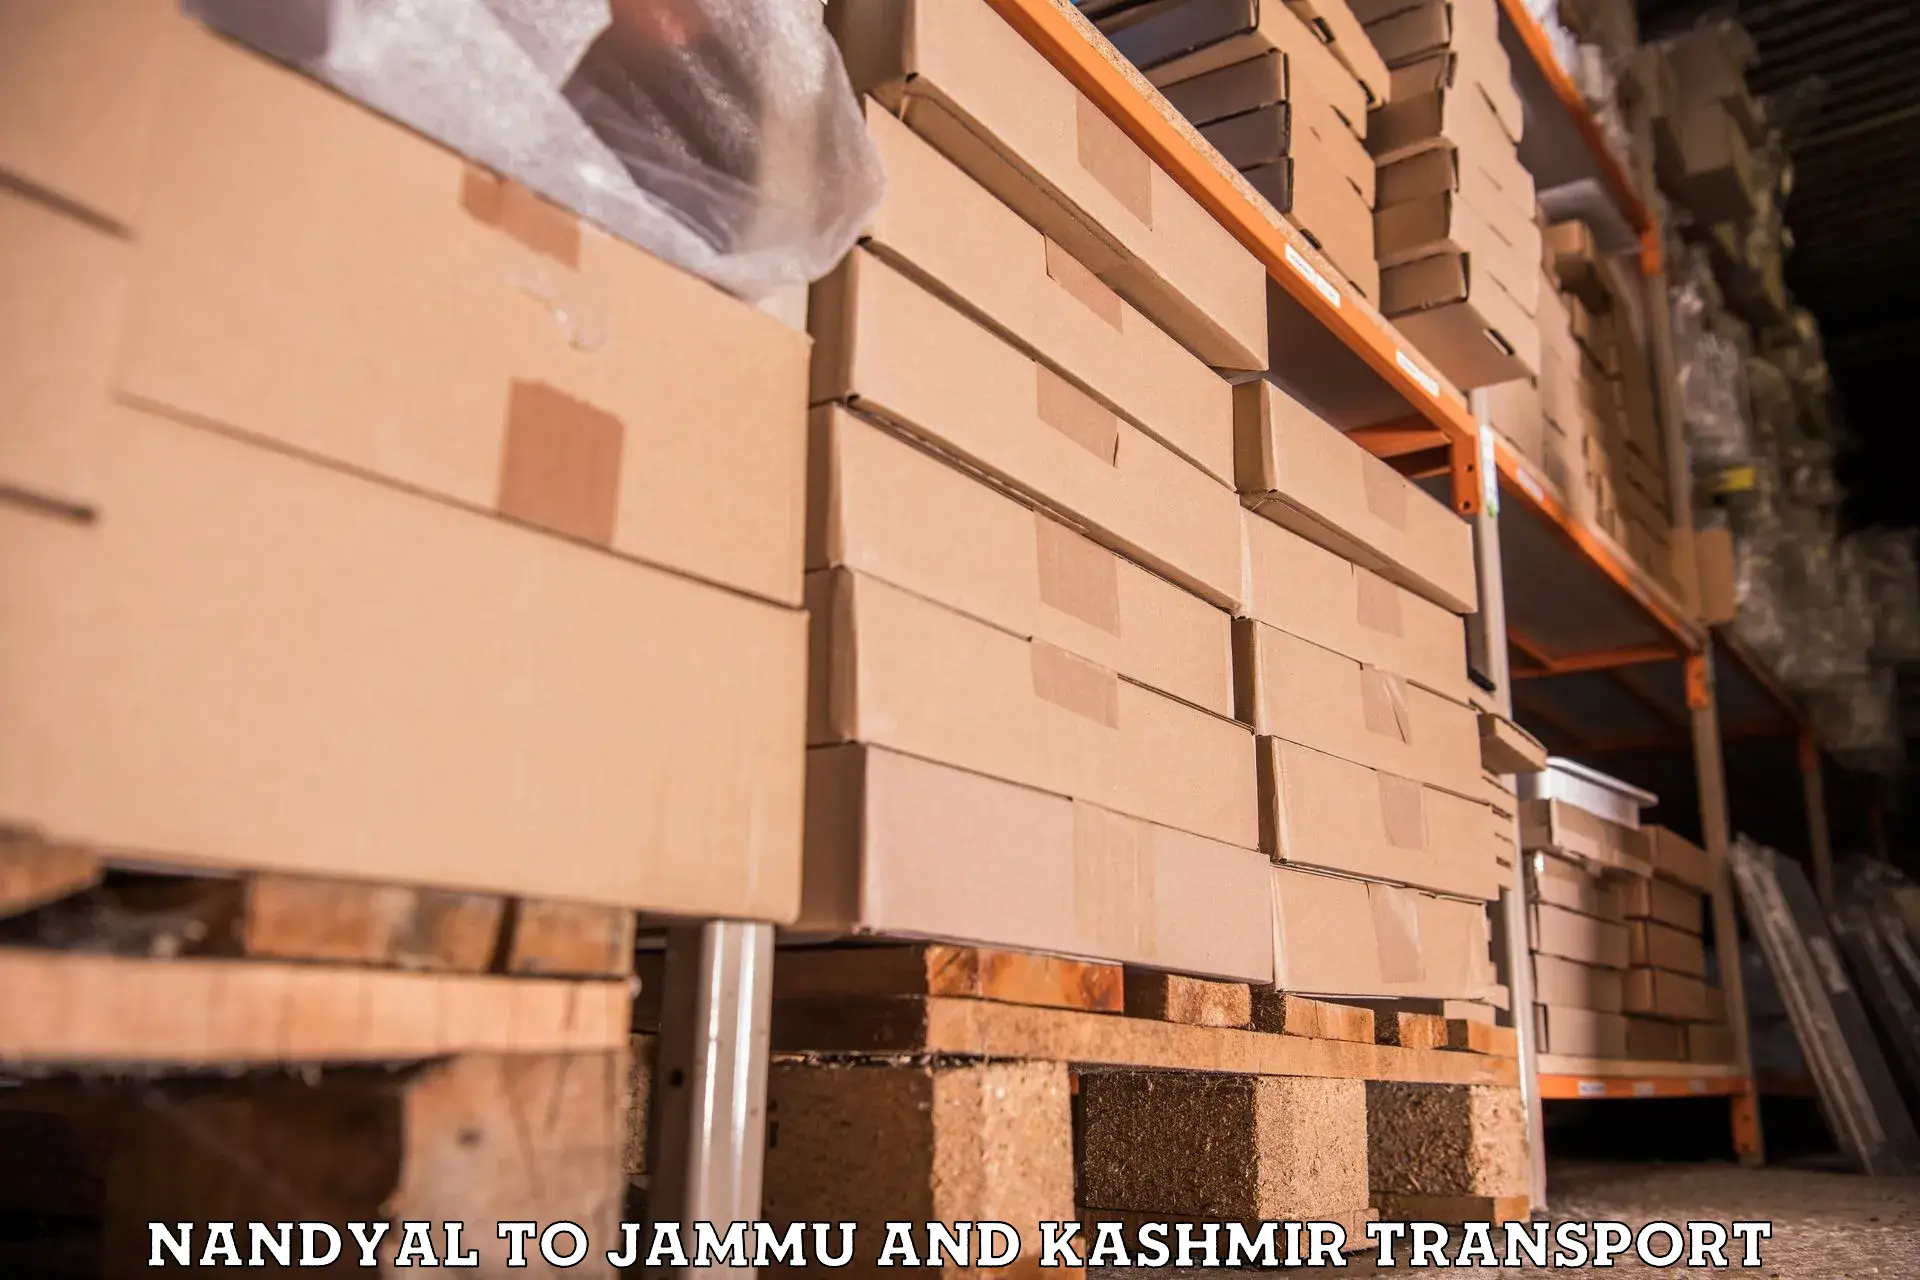 Daily transport service Nandyal to Jammu and Kashmir